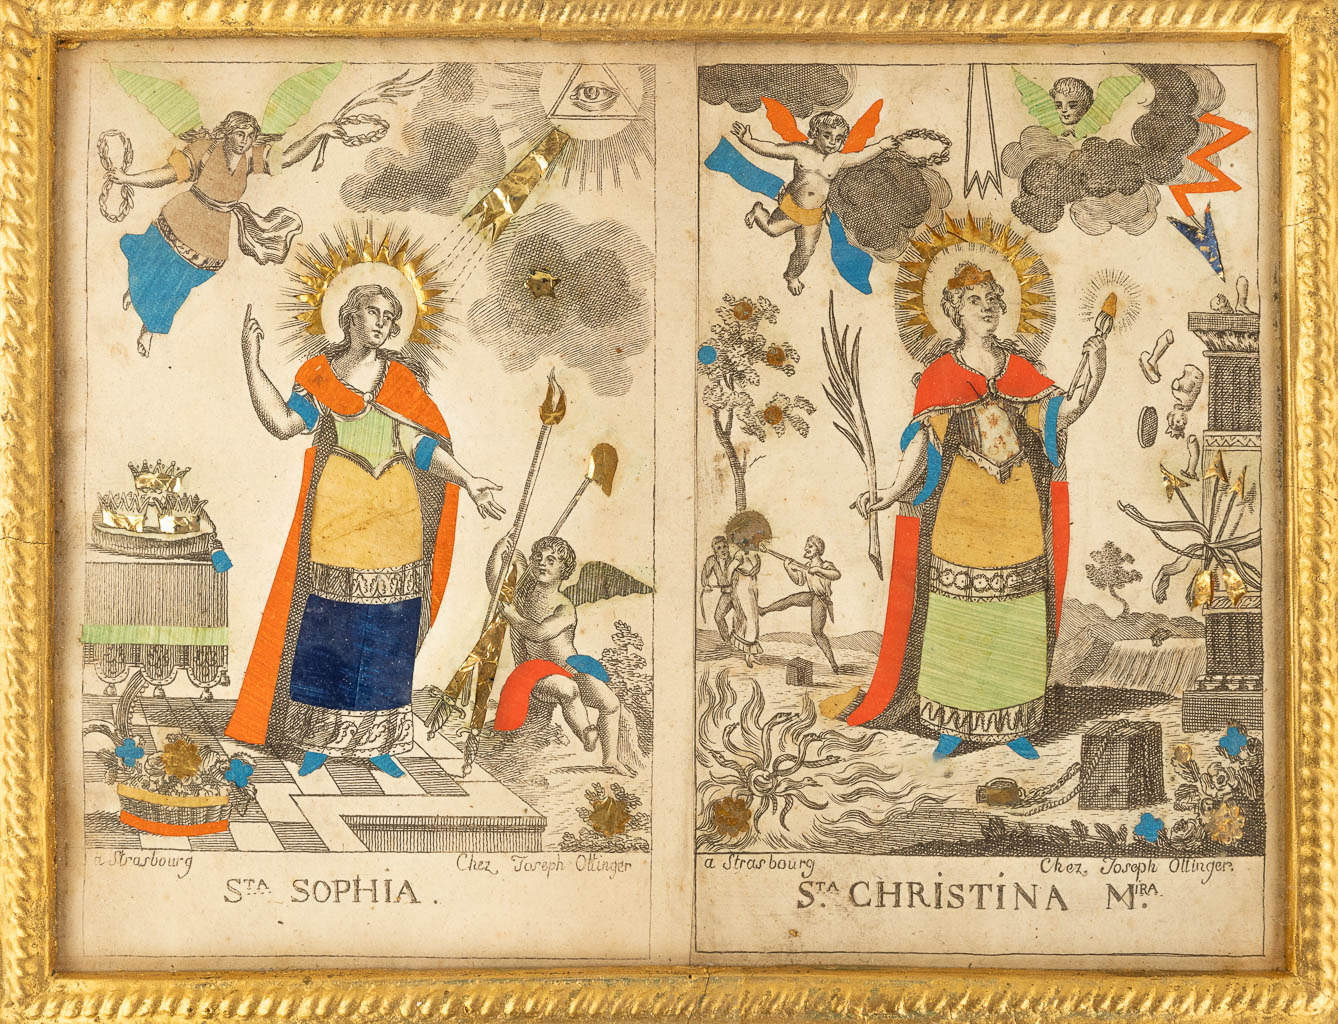 Een collectie van 3 religieuze kaders, waarvan 1 met een Angus Dei wassenzegel. (W: 45 x H: 38 cm)